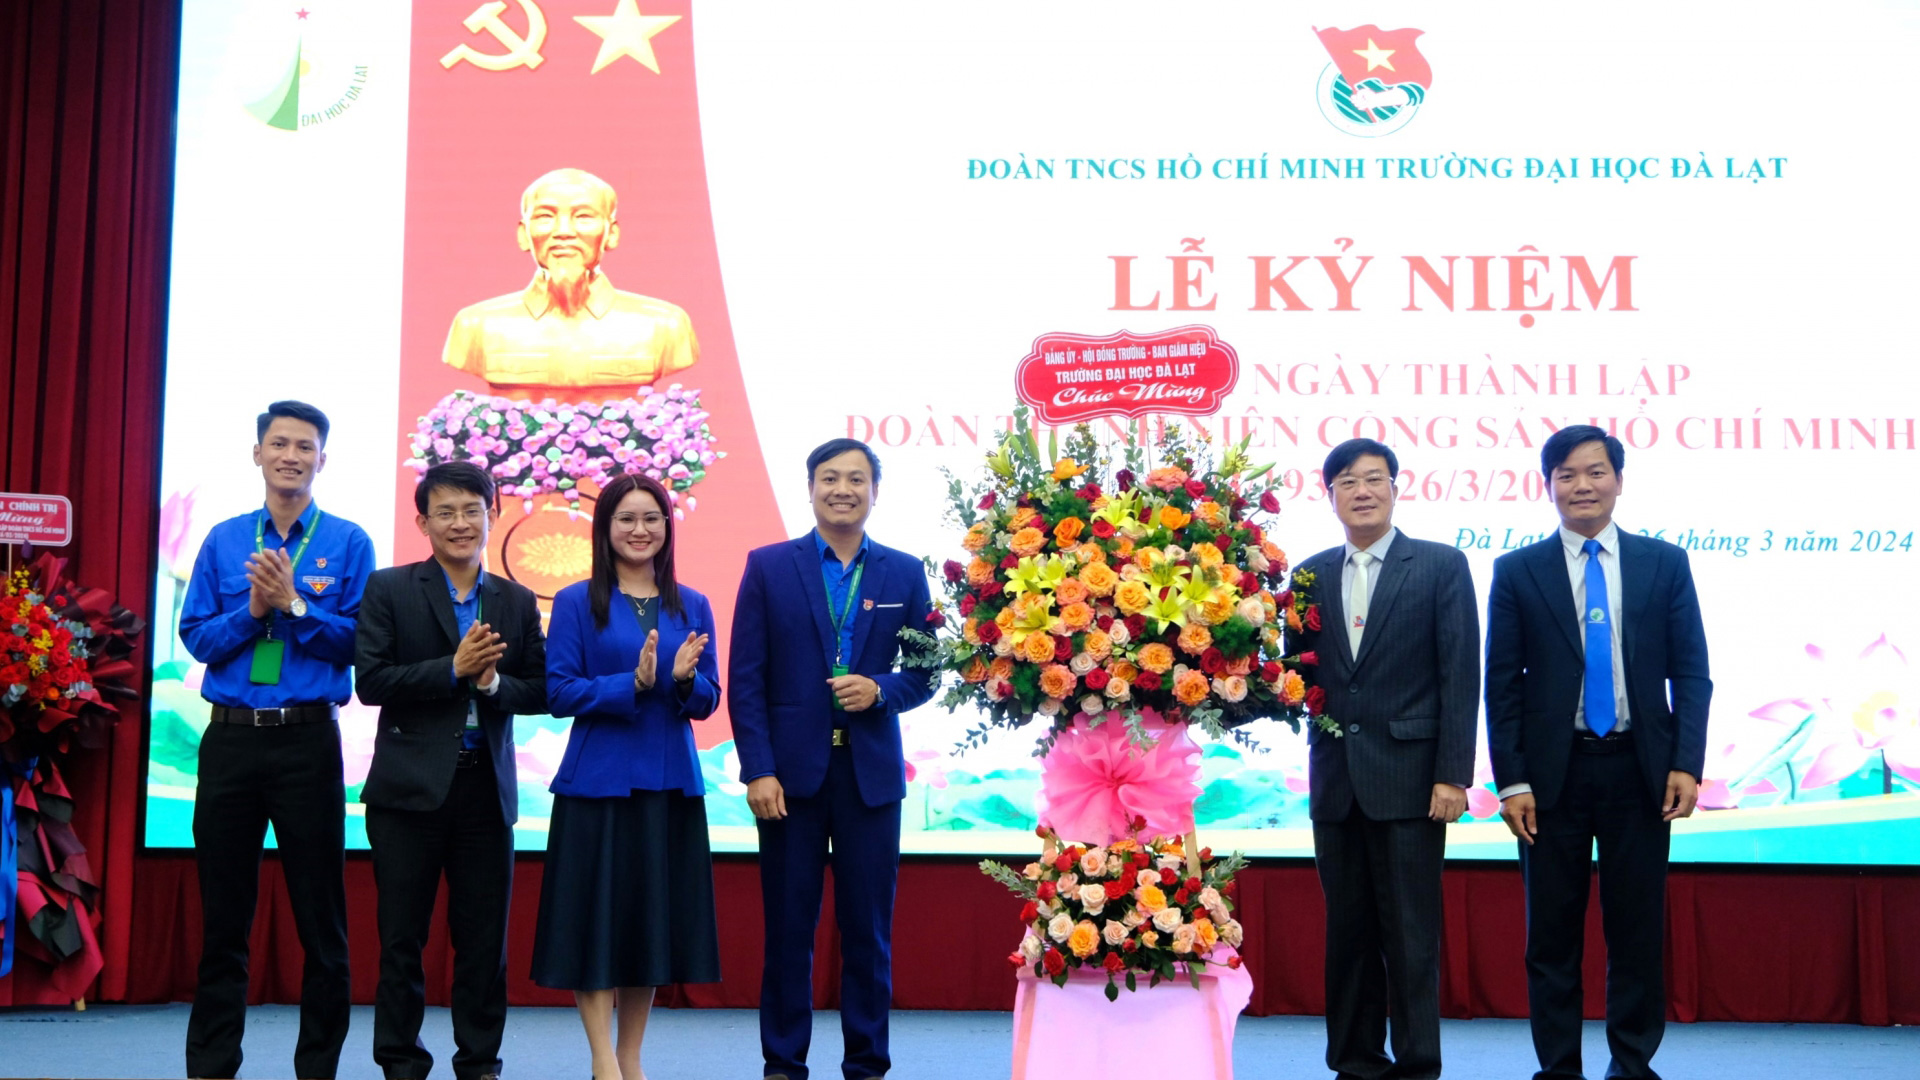 Trường Đại học Đà Lạt tổ chức lễ kỷ niệm 93 năm Ngày thành lập Đoàn